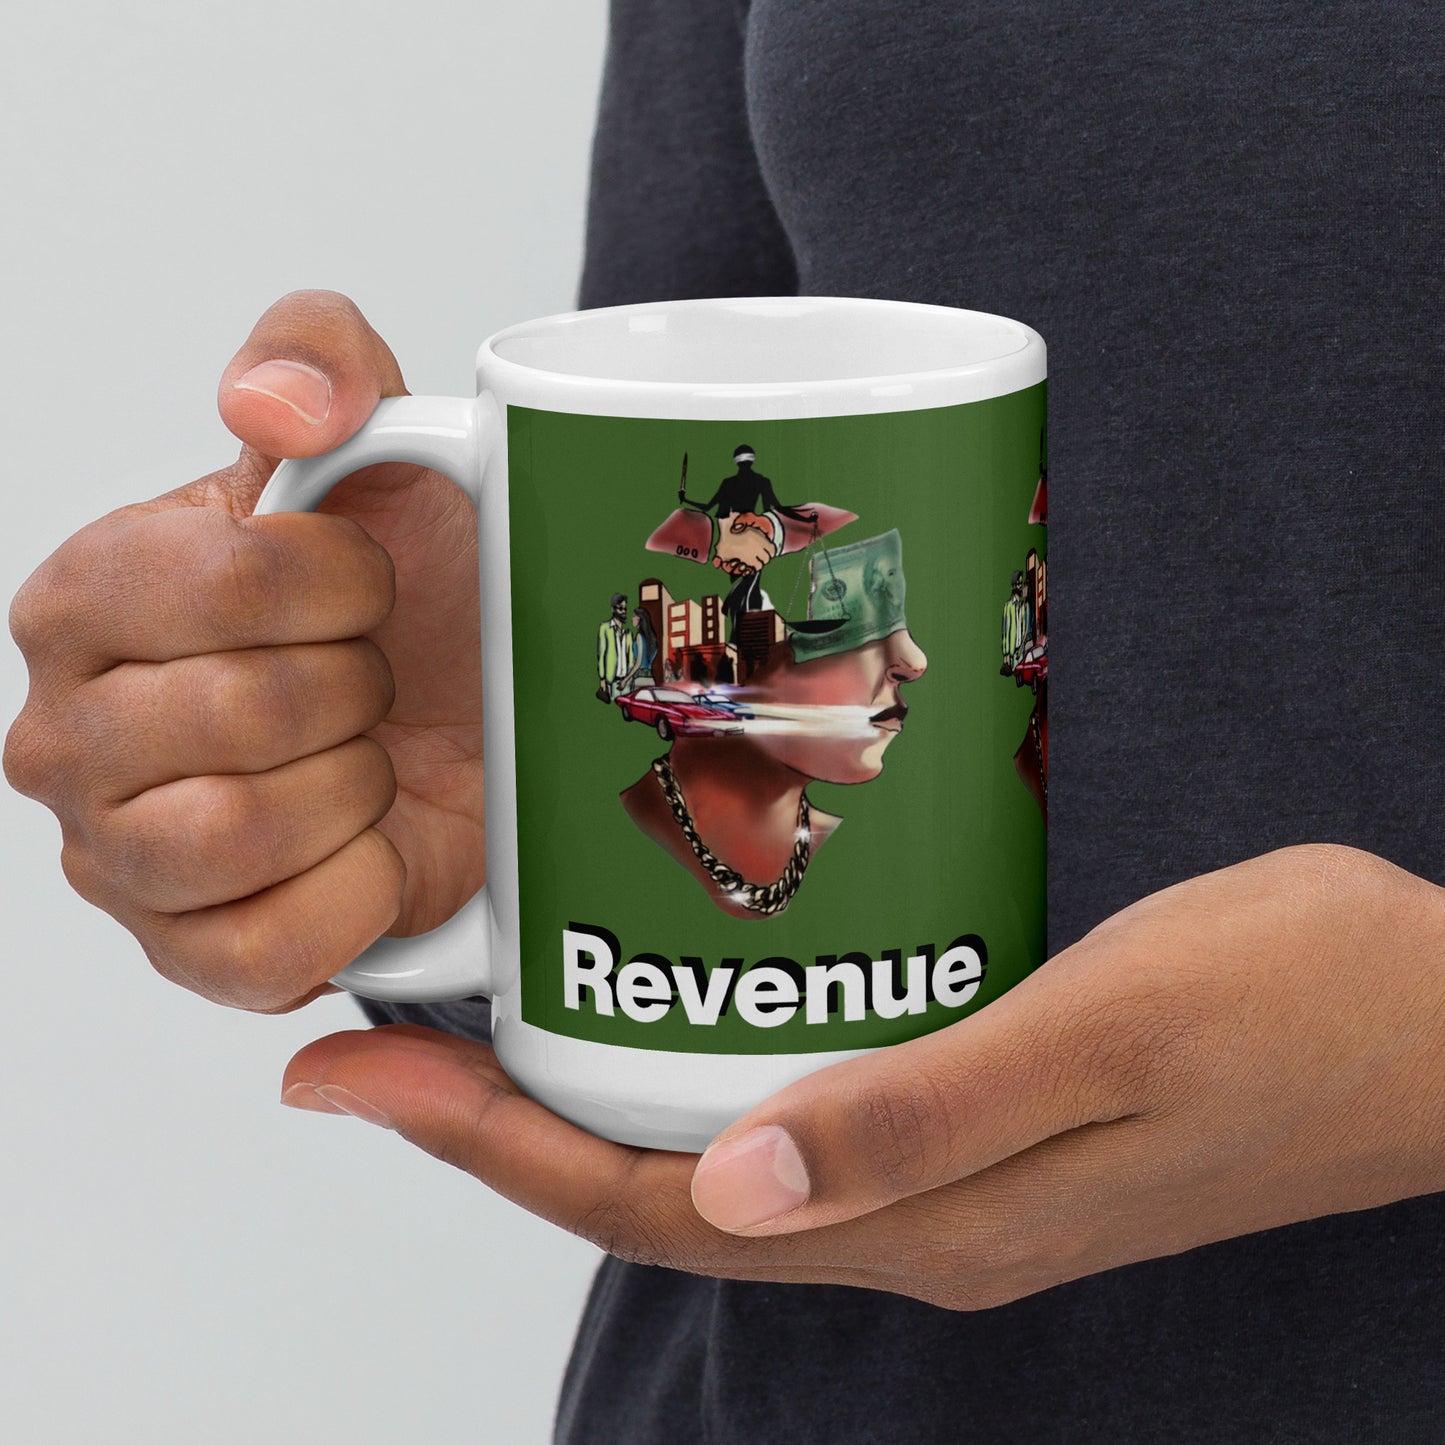 Revenue glossy mug